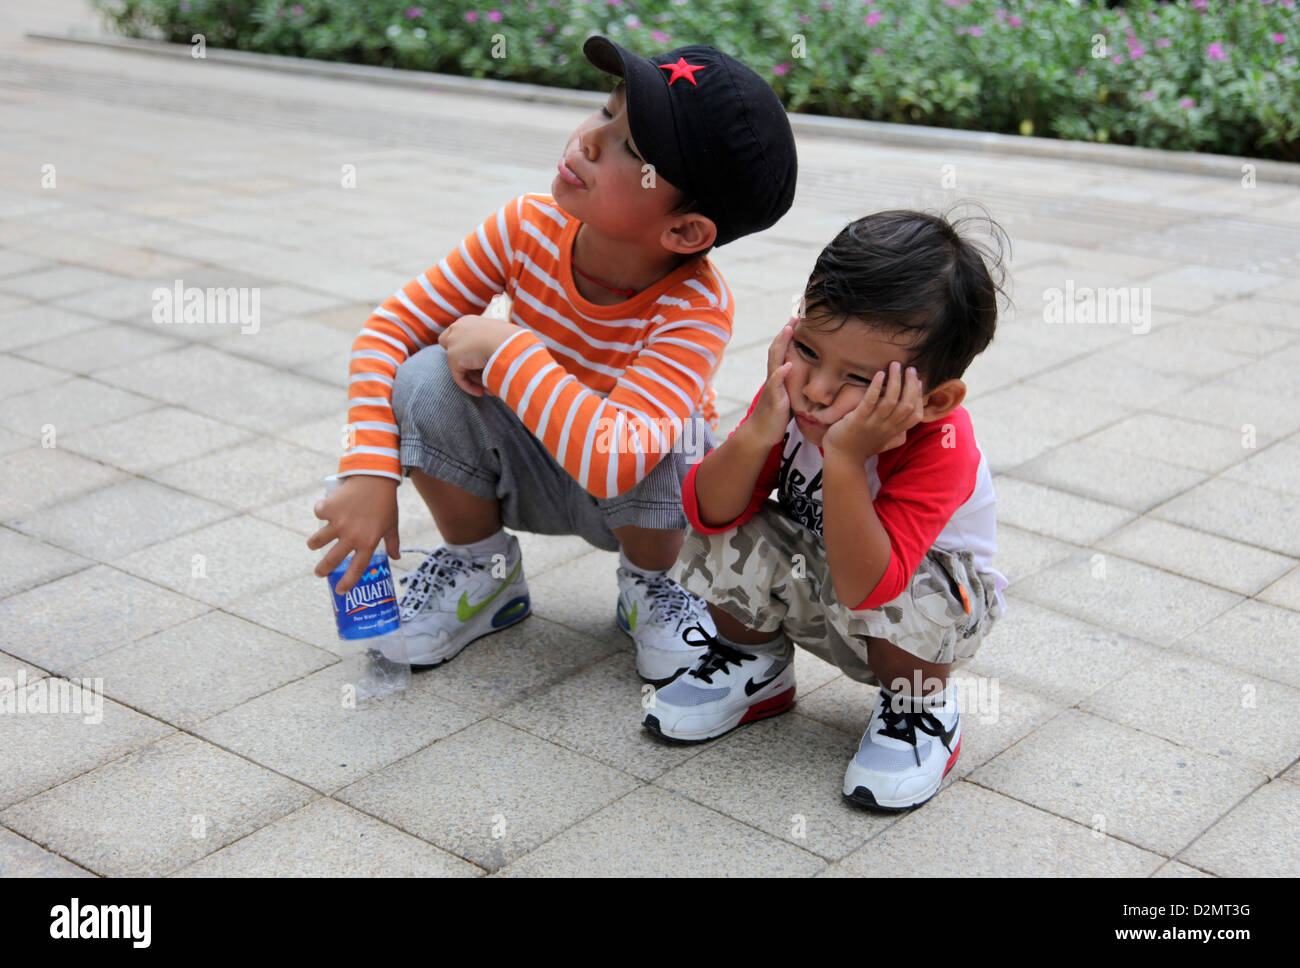 Es ist ein Foto von 2 Kinder, die eine wartende Fußgänger unterwegs und sie sind gelangweilt. Ziemlich langweilig! Stockfoto